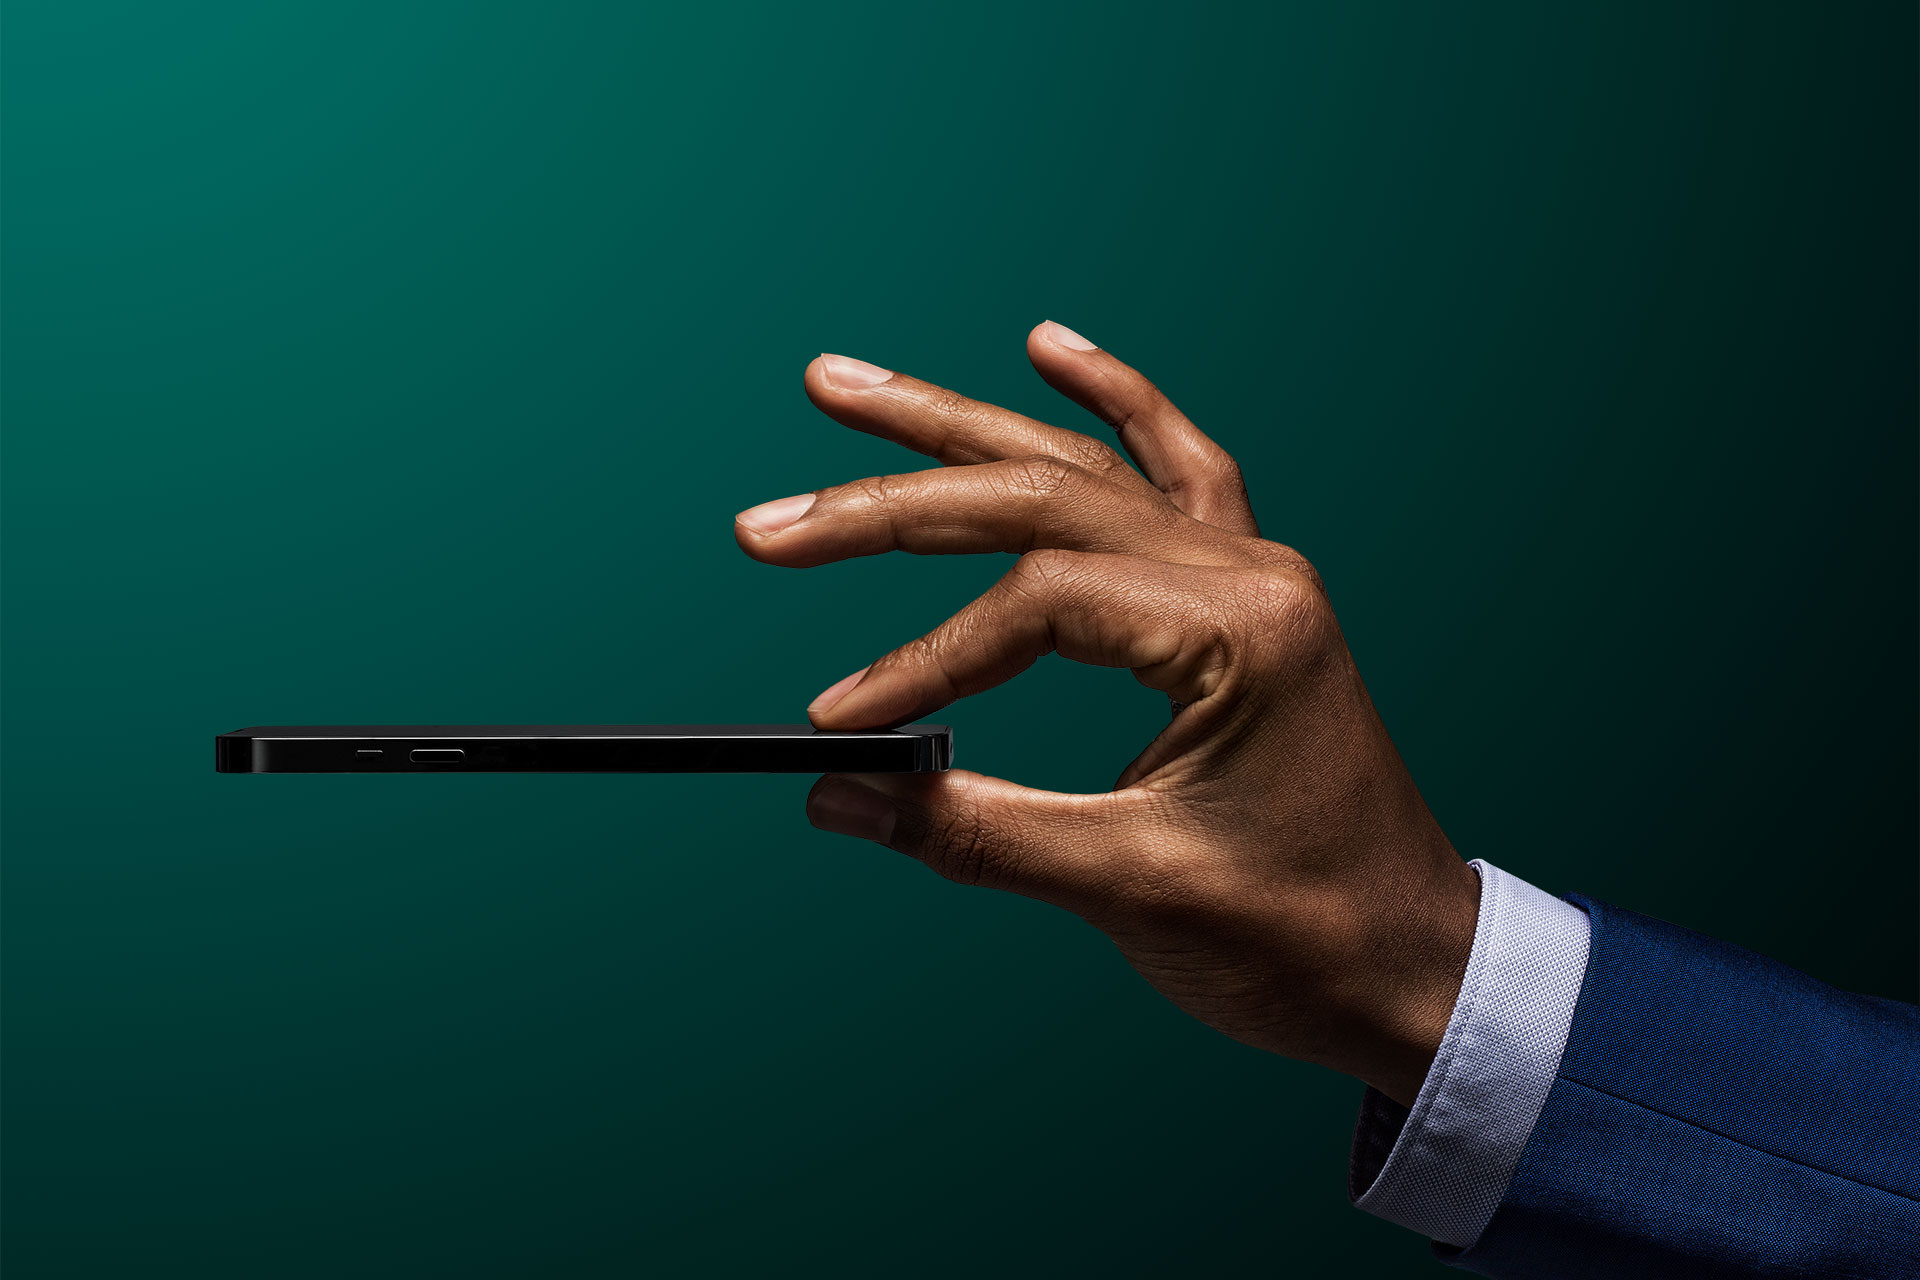 Un uomo d'affari tiene in aria il suo cellulare davanti a uno sfondo verde scuro, simbolo dell'app di investimento Vontobel Volt.